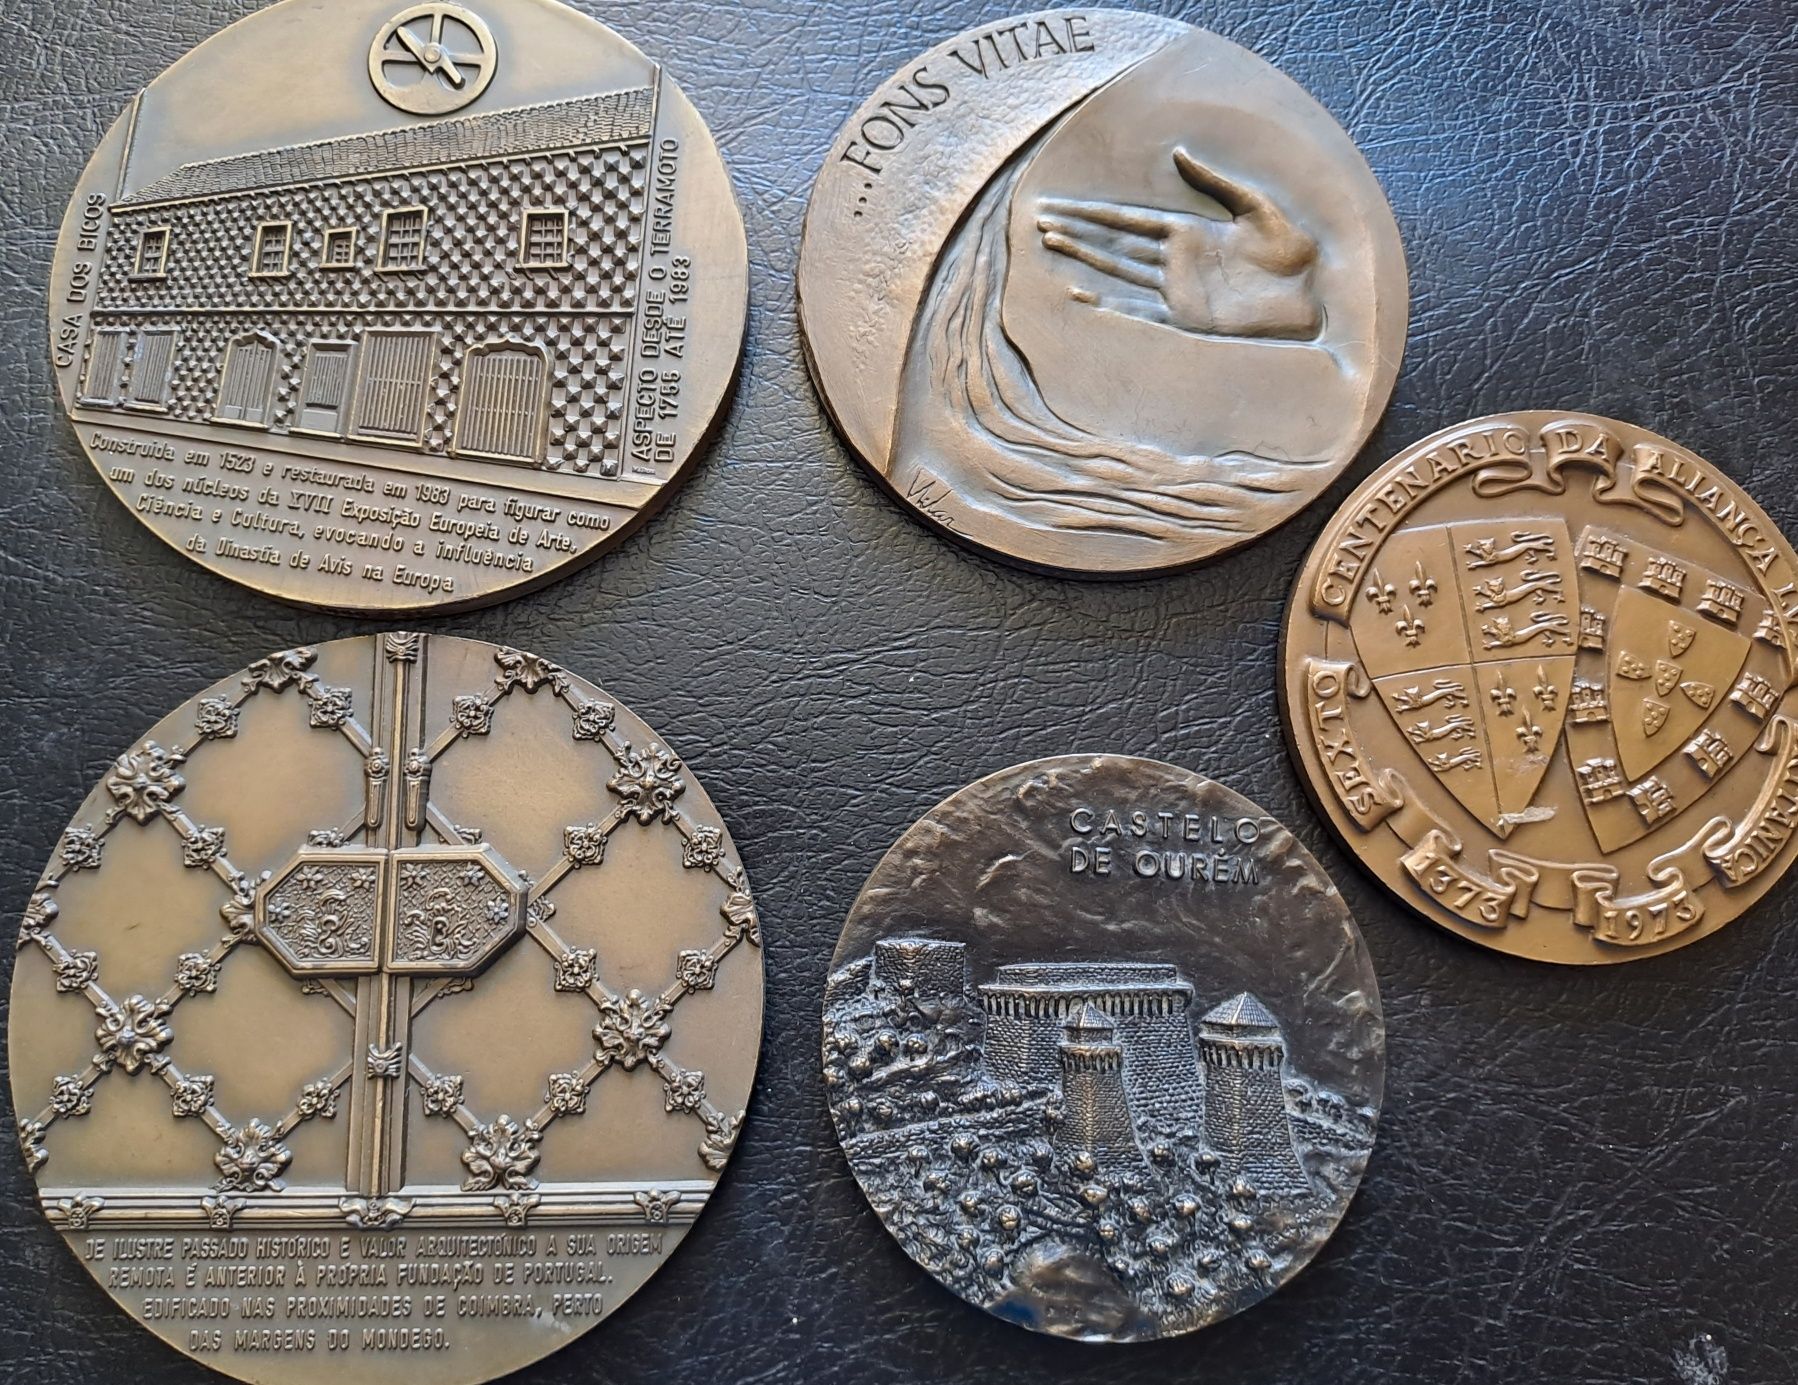 Medalhas antigas diversas